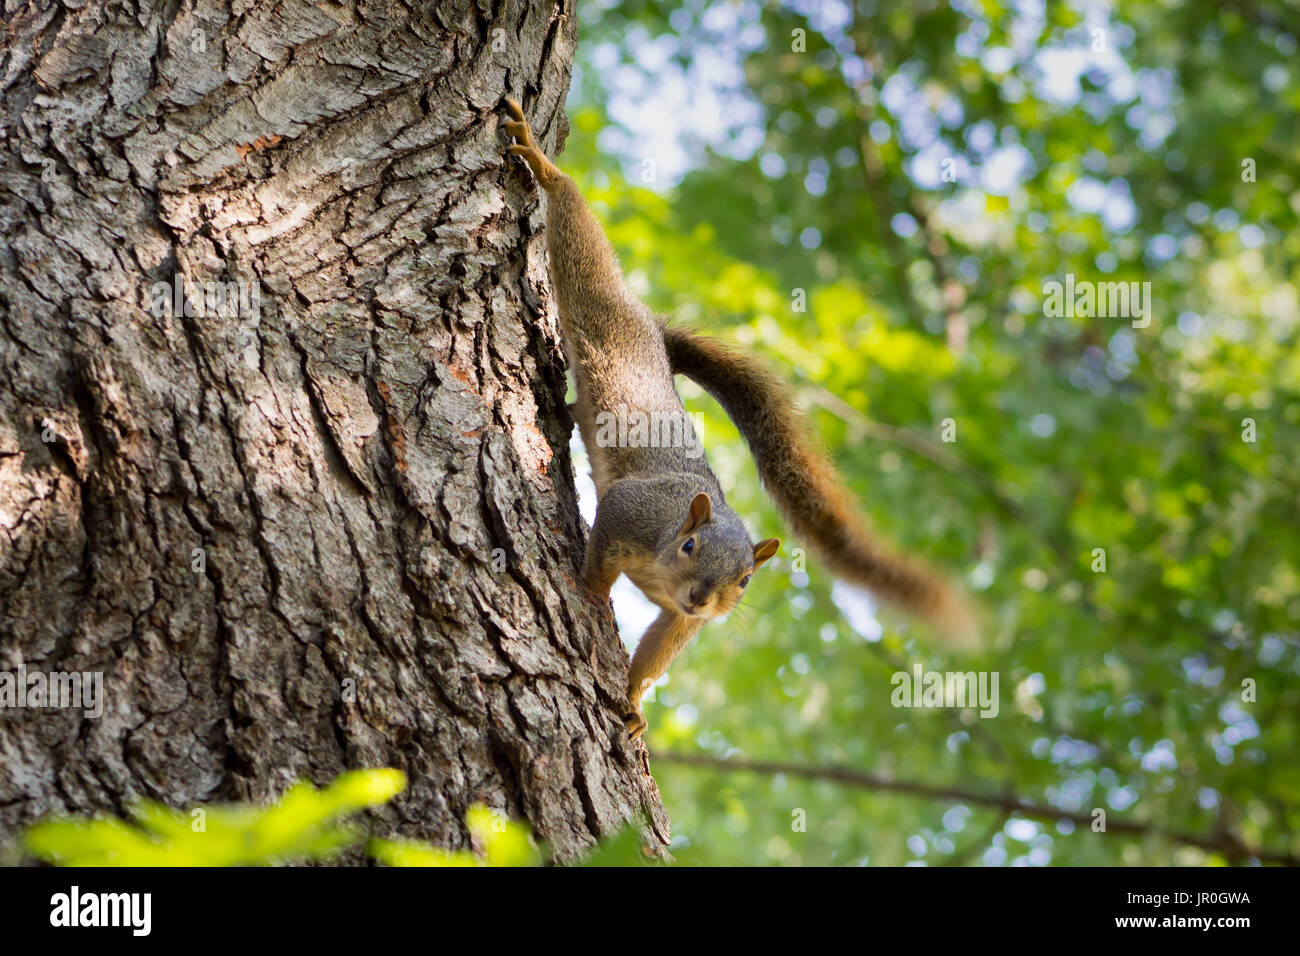 Der Fuchs, Eichhörnchen ist vorsichtig aber zuversichtlich. Ihre spielerische Possen sind lustig zu beobachten. Ihre Fähigkeit, etwas zu klettern ist eine Herausforderung, Futterhäuschen. Stockfoto